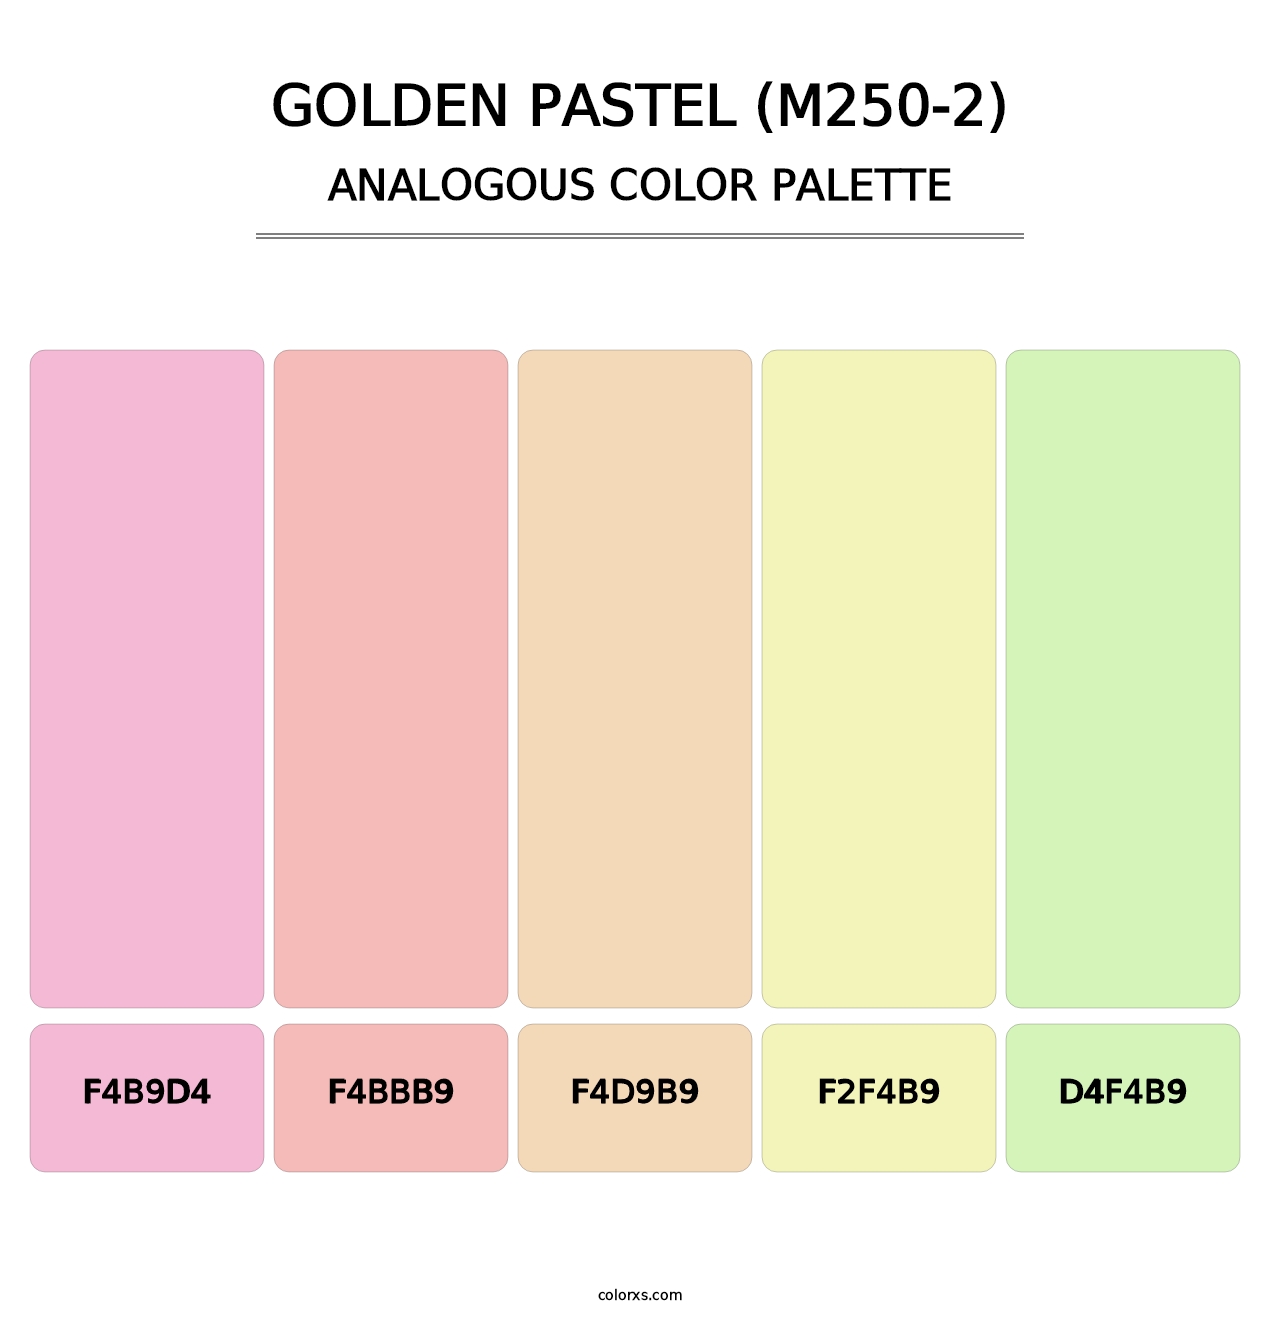 Golden Pastel (M250-2) - Analogous Color Palette